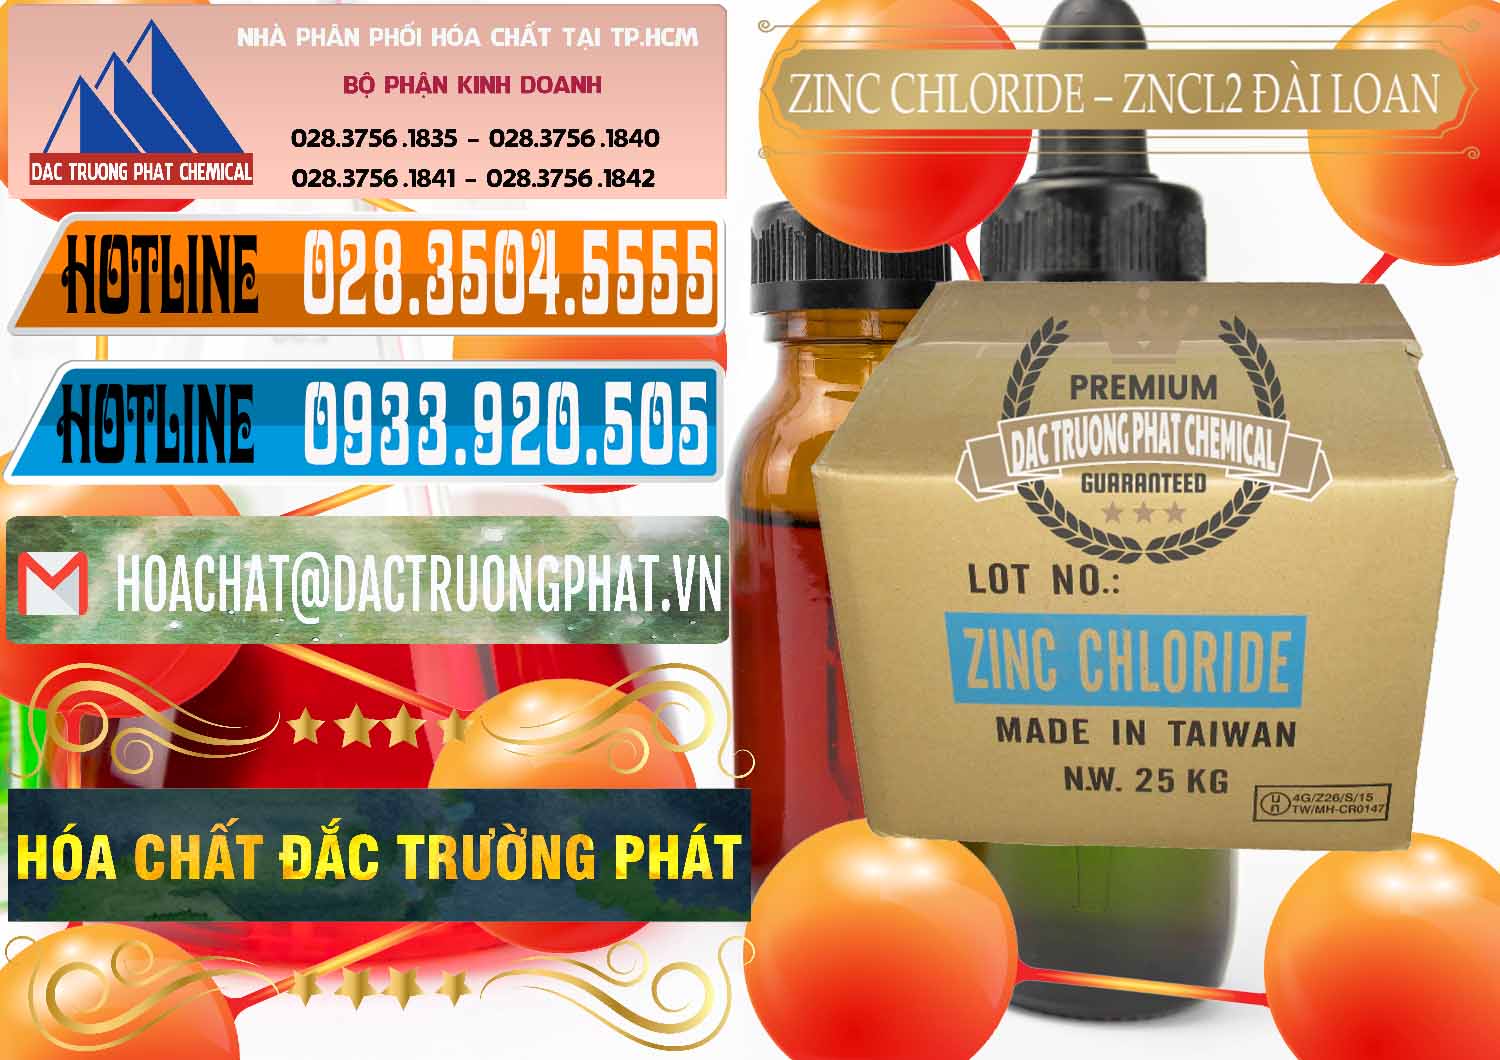 Cty bán & cung ứng Zinc Chloride - ZNCL2 96% Đài Loan Taiwan - 0178 - Chuyên kinh doanh ( phân phối ) hóa chất tại TP.HCM - stmp.net